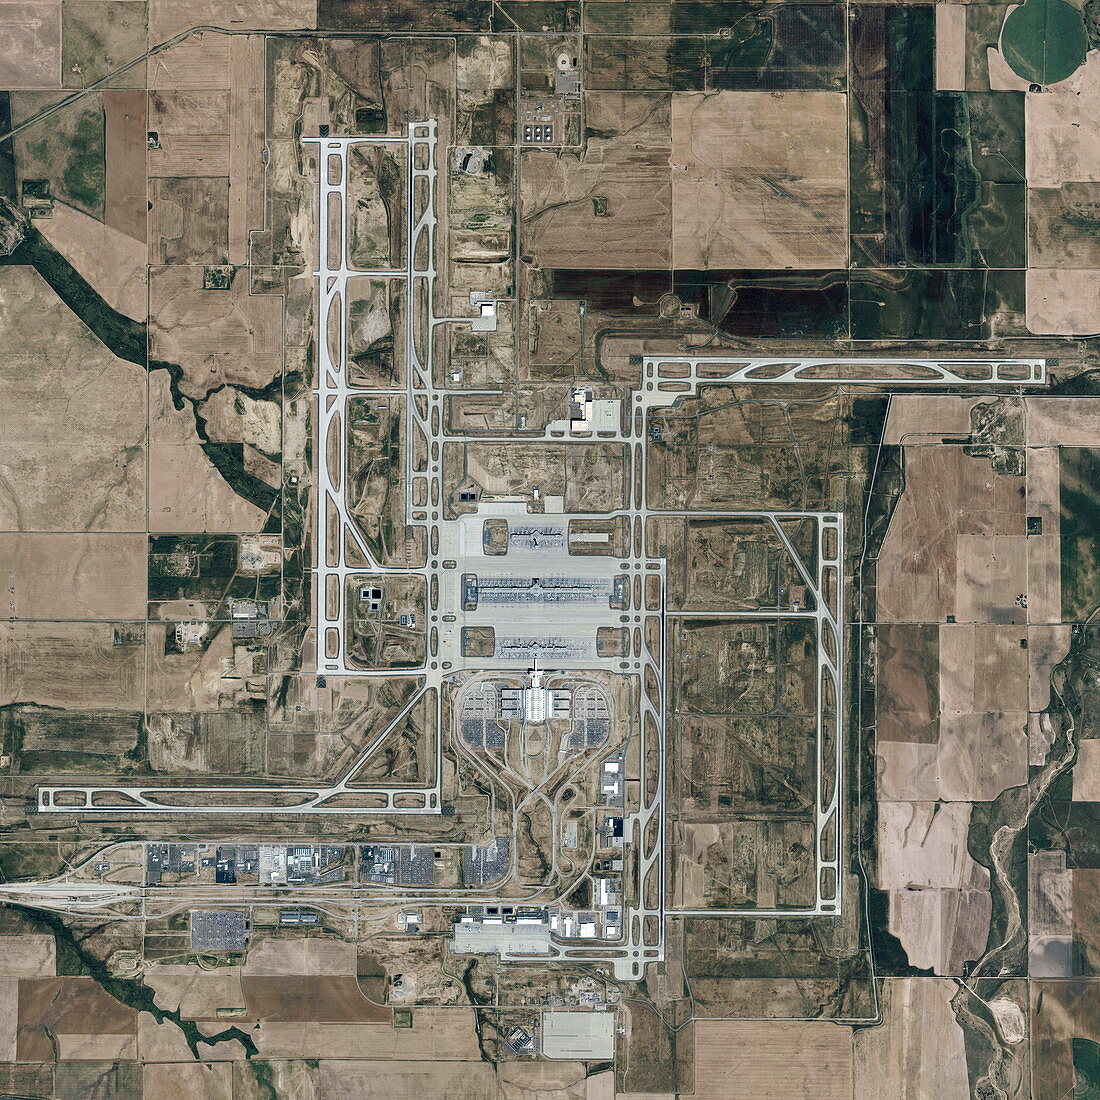 Denver International Airport,USA